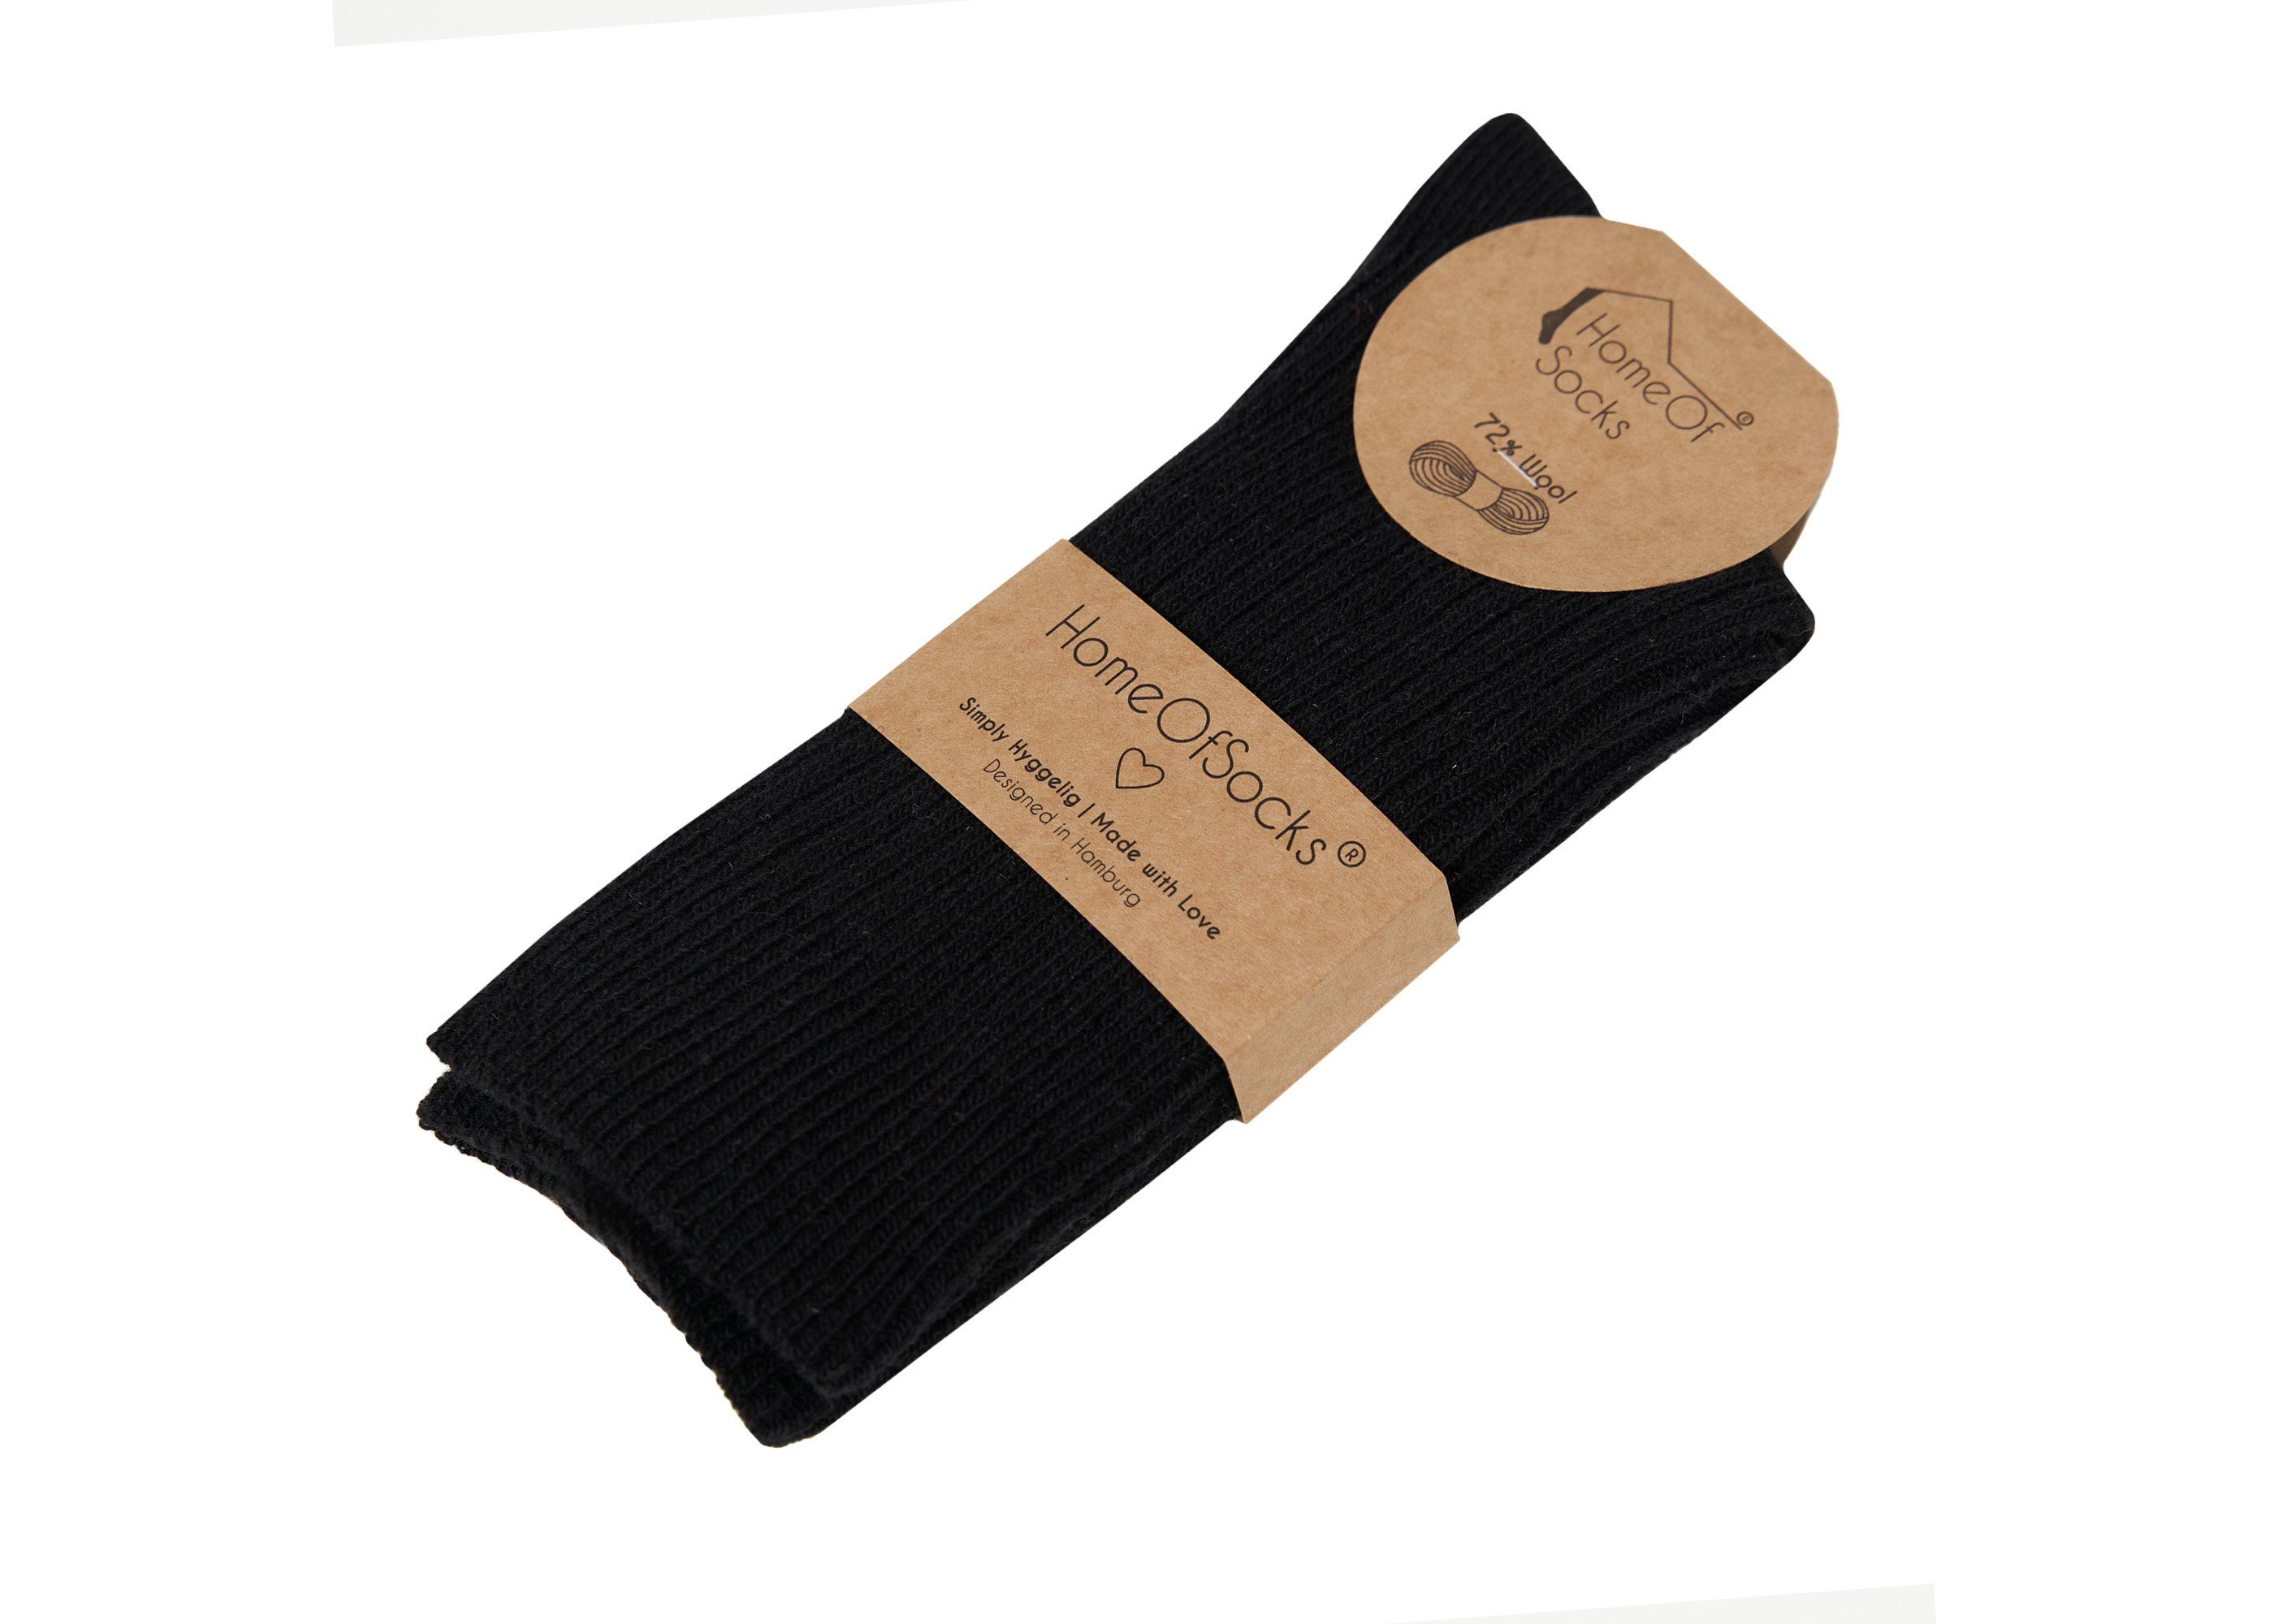 HomeOfSocks Socken Druckarm Wollanteil 72% Hochwertige Wollsocken Dünne Bunt Uni Schwarz Dünn Bunte mit Wollsocken